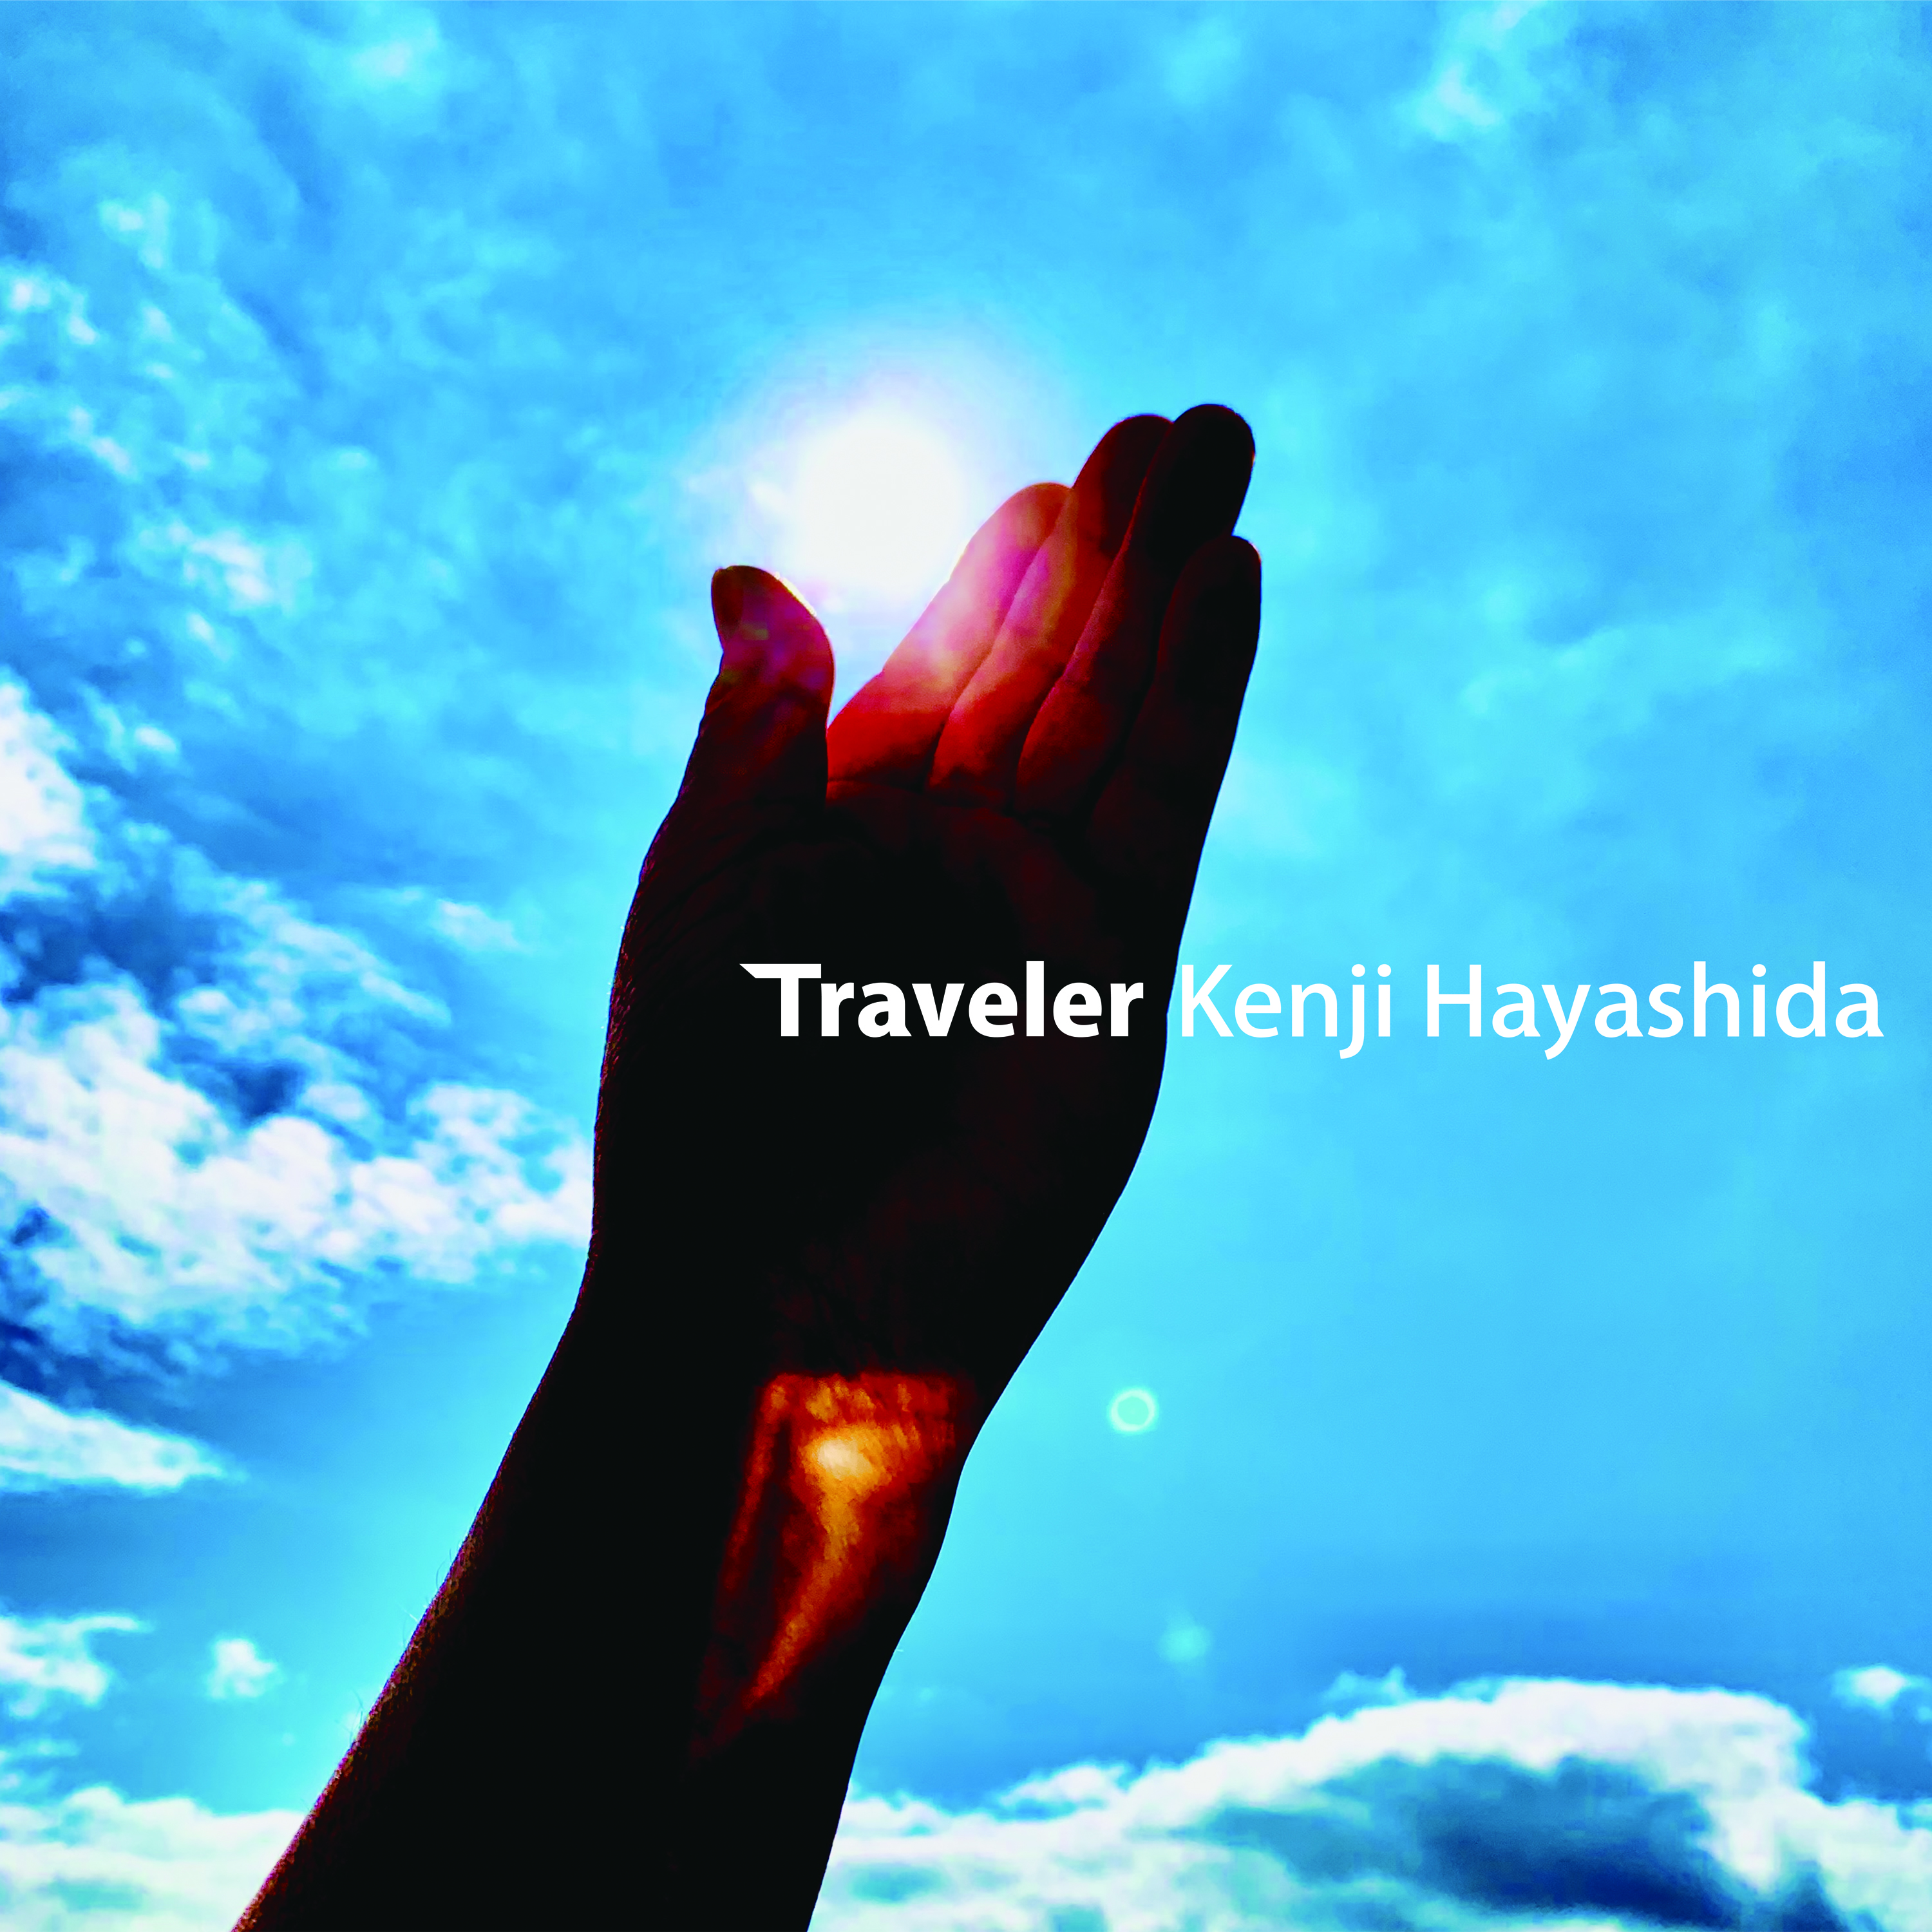 林田健司 デビュー30周年記念オリジナルアルバム Traveler 全世界へ配信開始 株式会社massenextのプレスリリース